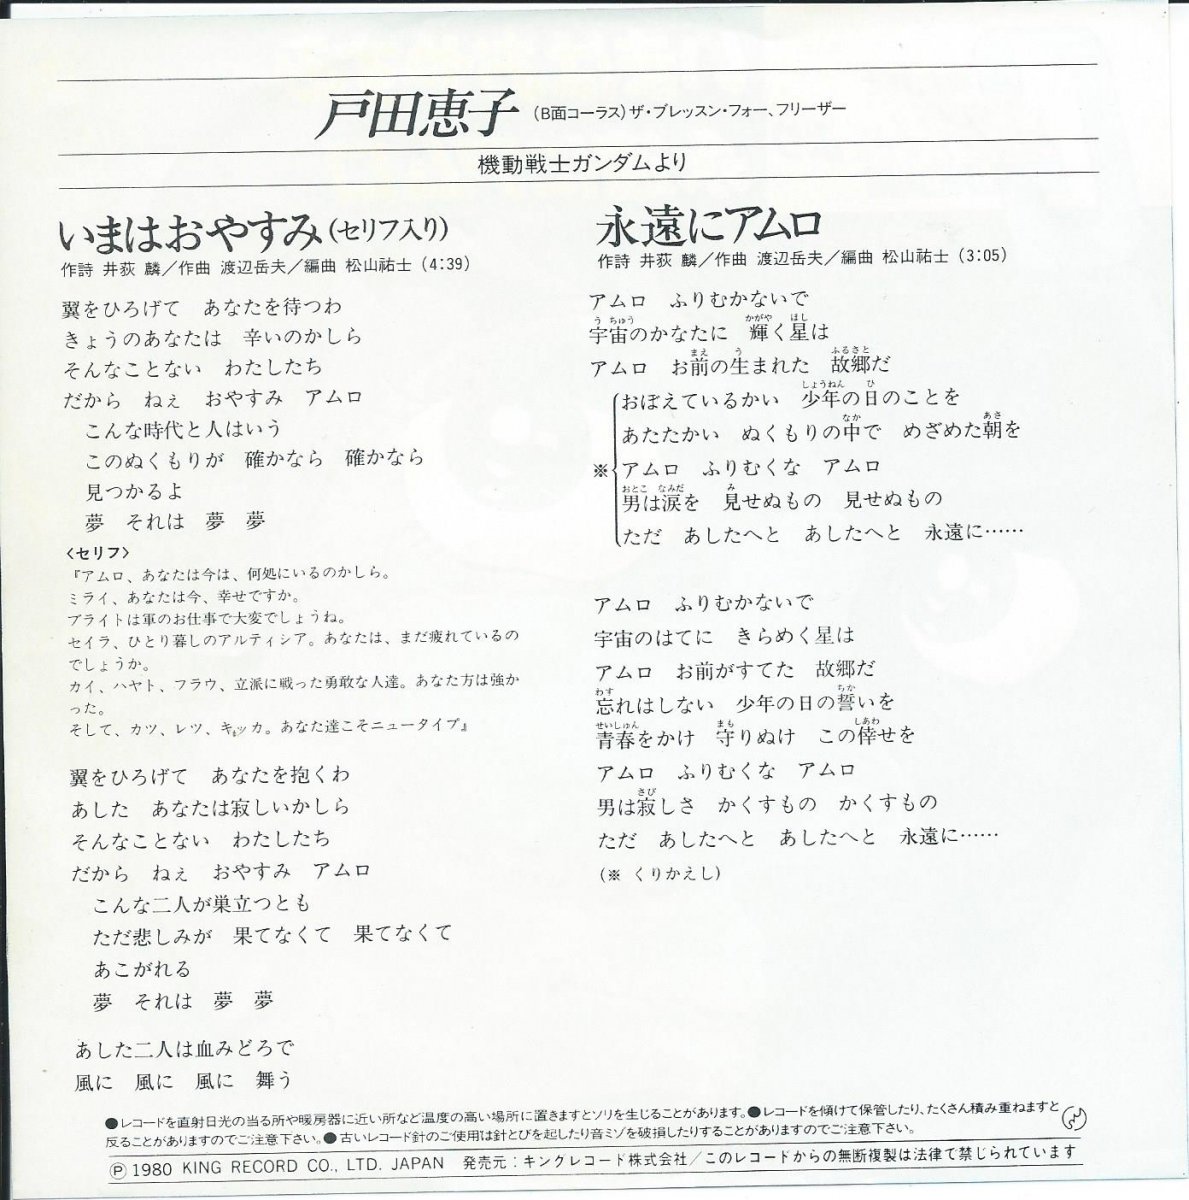 戸田恵子 Keiko Toda いまはおやすみ 永遠にアムロ 機動戦士ガンダム 7 Hip Tank Records